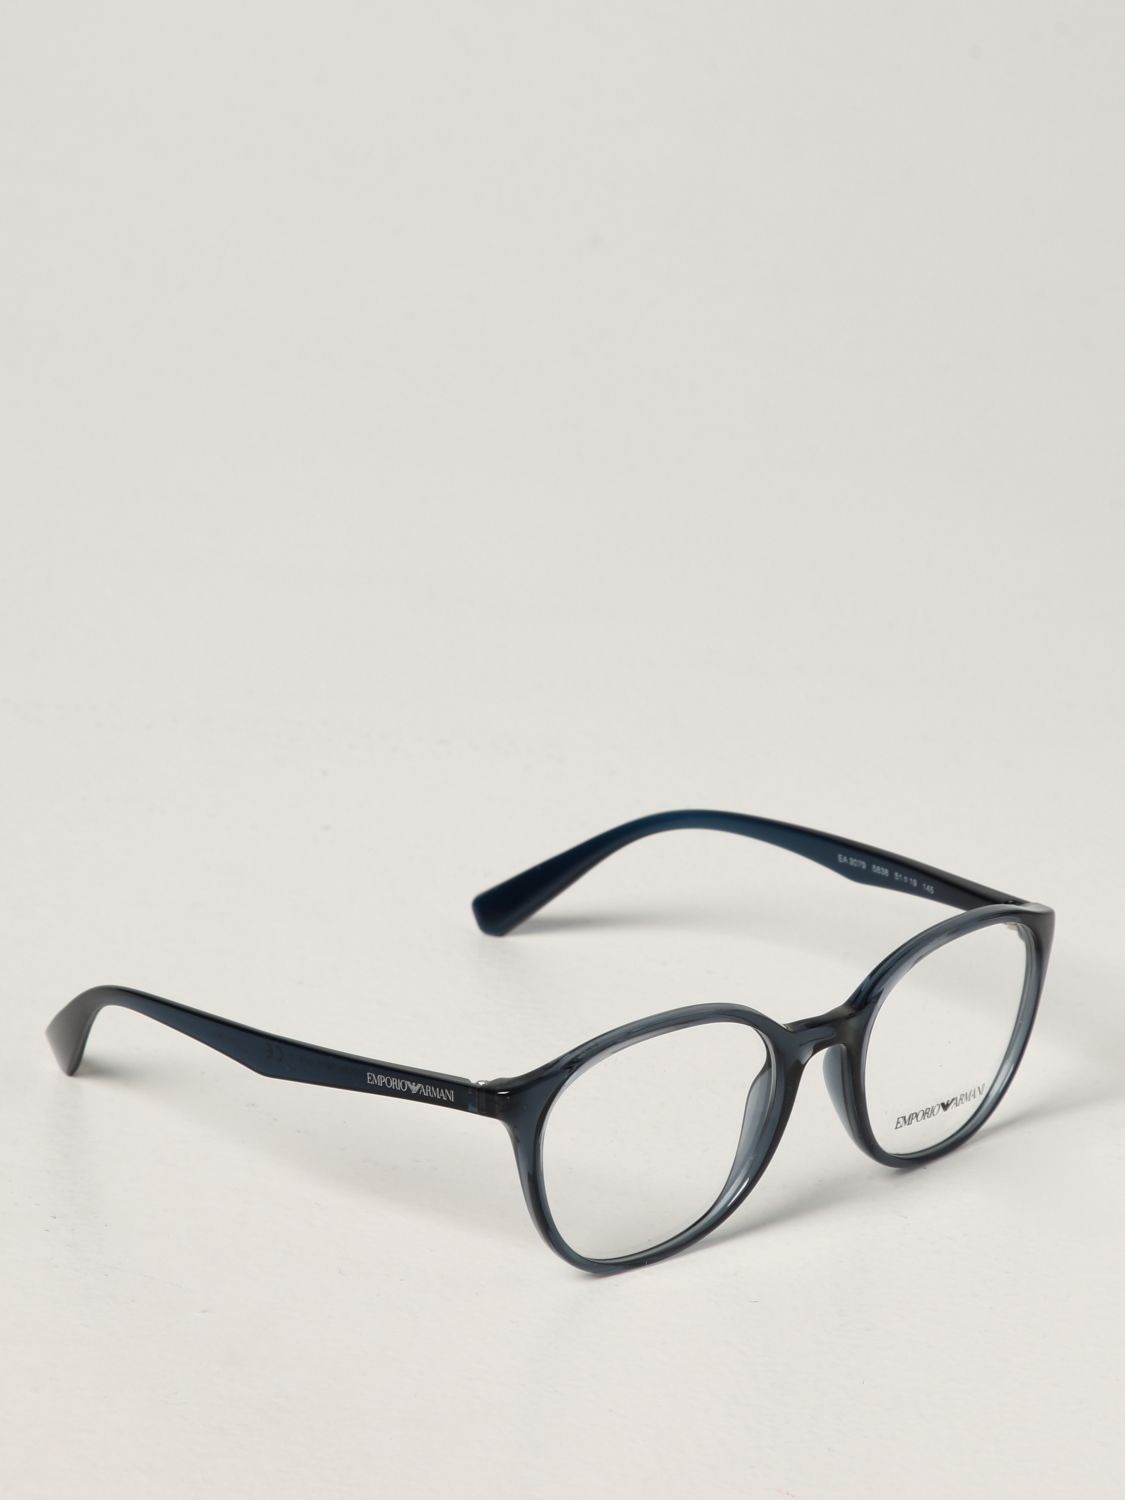 EMPORIO ARMANI: Gafas sol para hombre, Azul Oscuro | Gafas De Emporio Armani EA 3079 en GIGLIO.COM